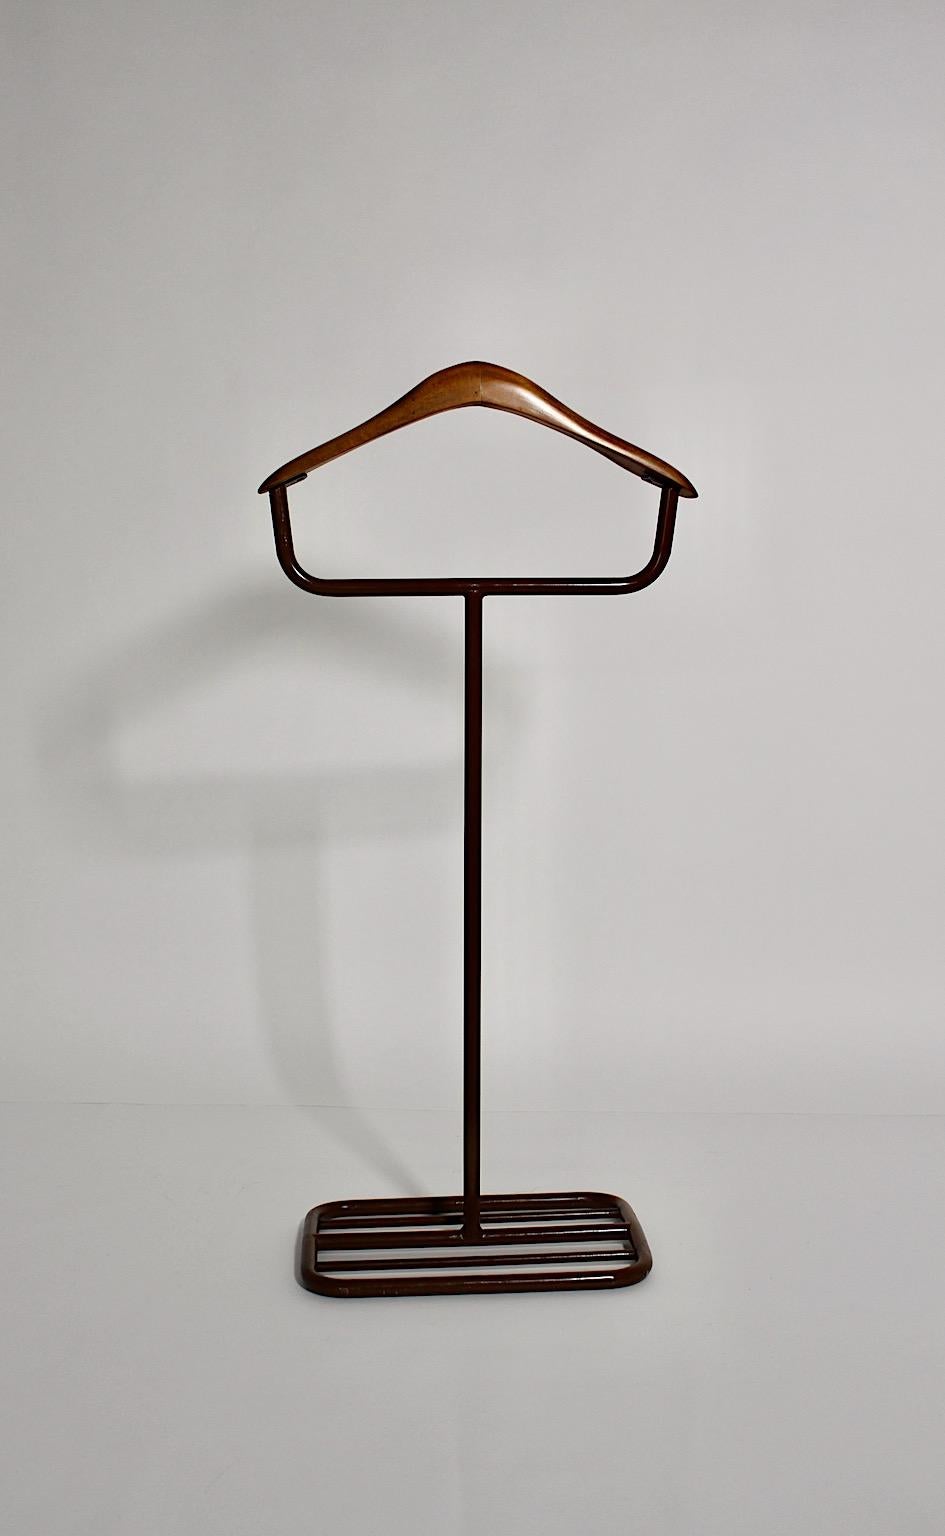 Valet ou porte-manteau vintage Bauhaus en tube d'acier laqué et hêtre de couleur brune, circa 1930 Allemagne.
Un valet ou porte-manteau élégant et épuré en métal laqué et en hêtre, conçu et fabriqué vers 1930 en Allemagne.
Par son aspect sobre, le